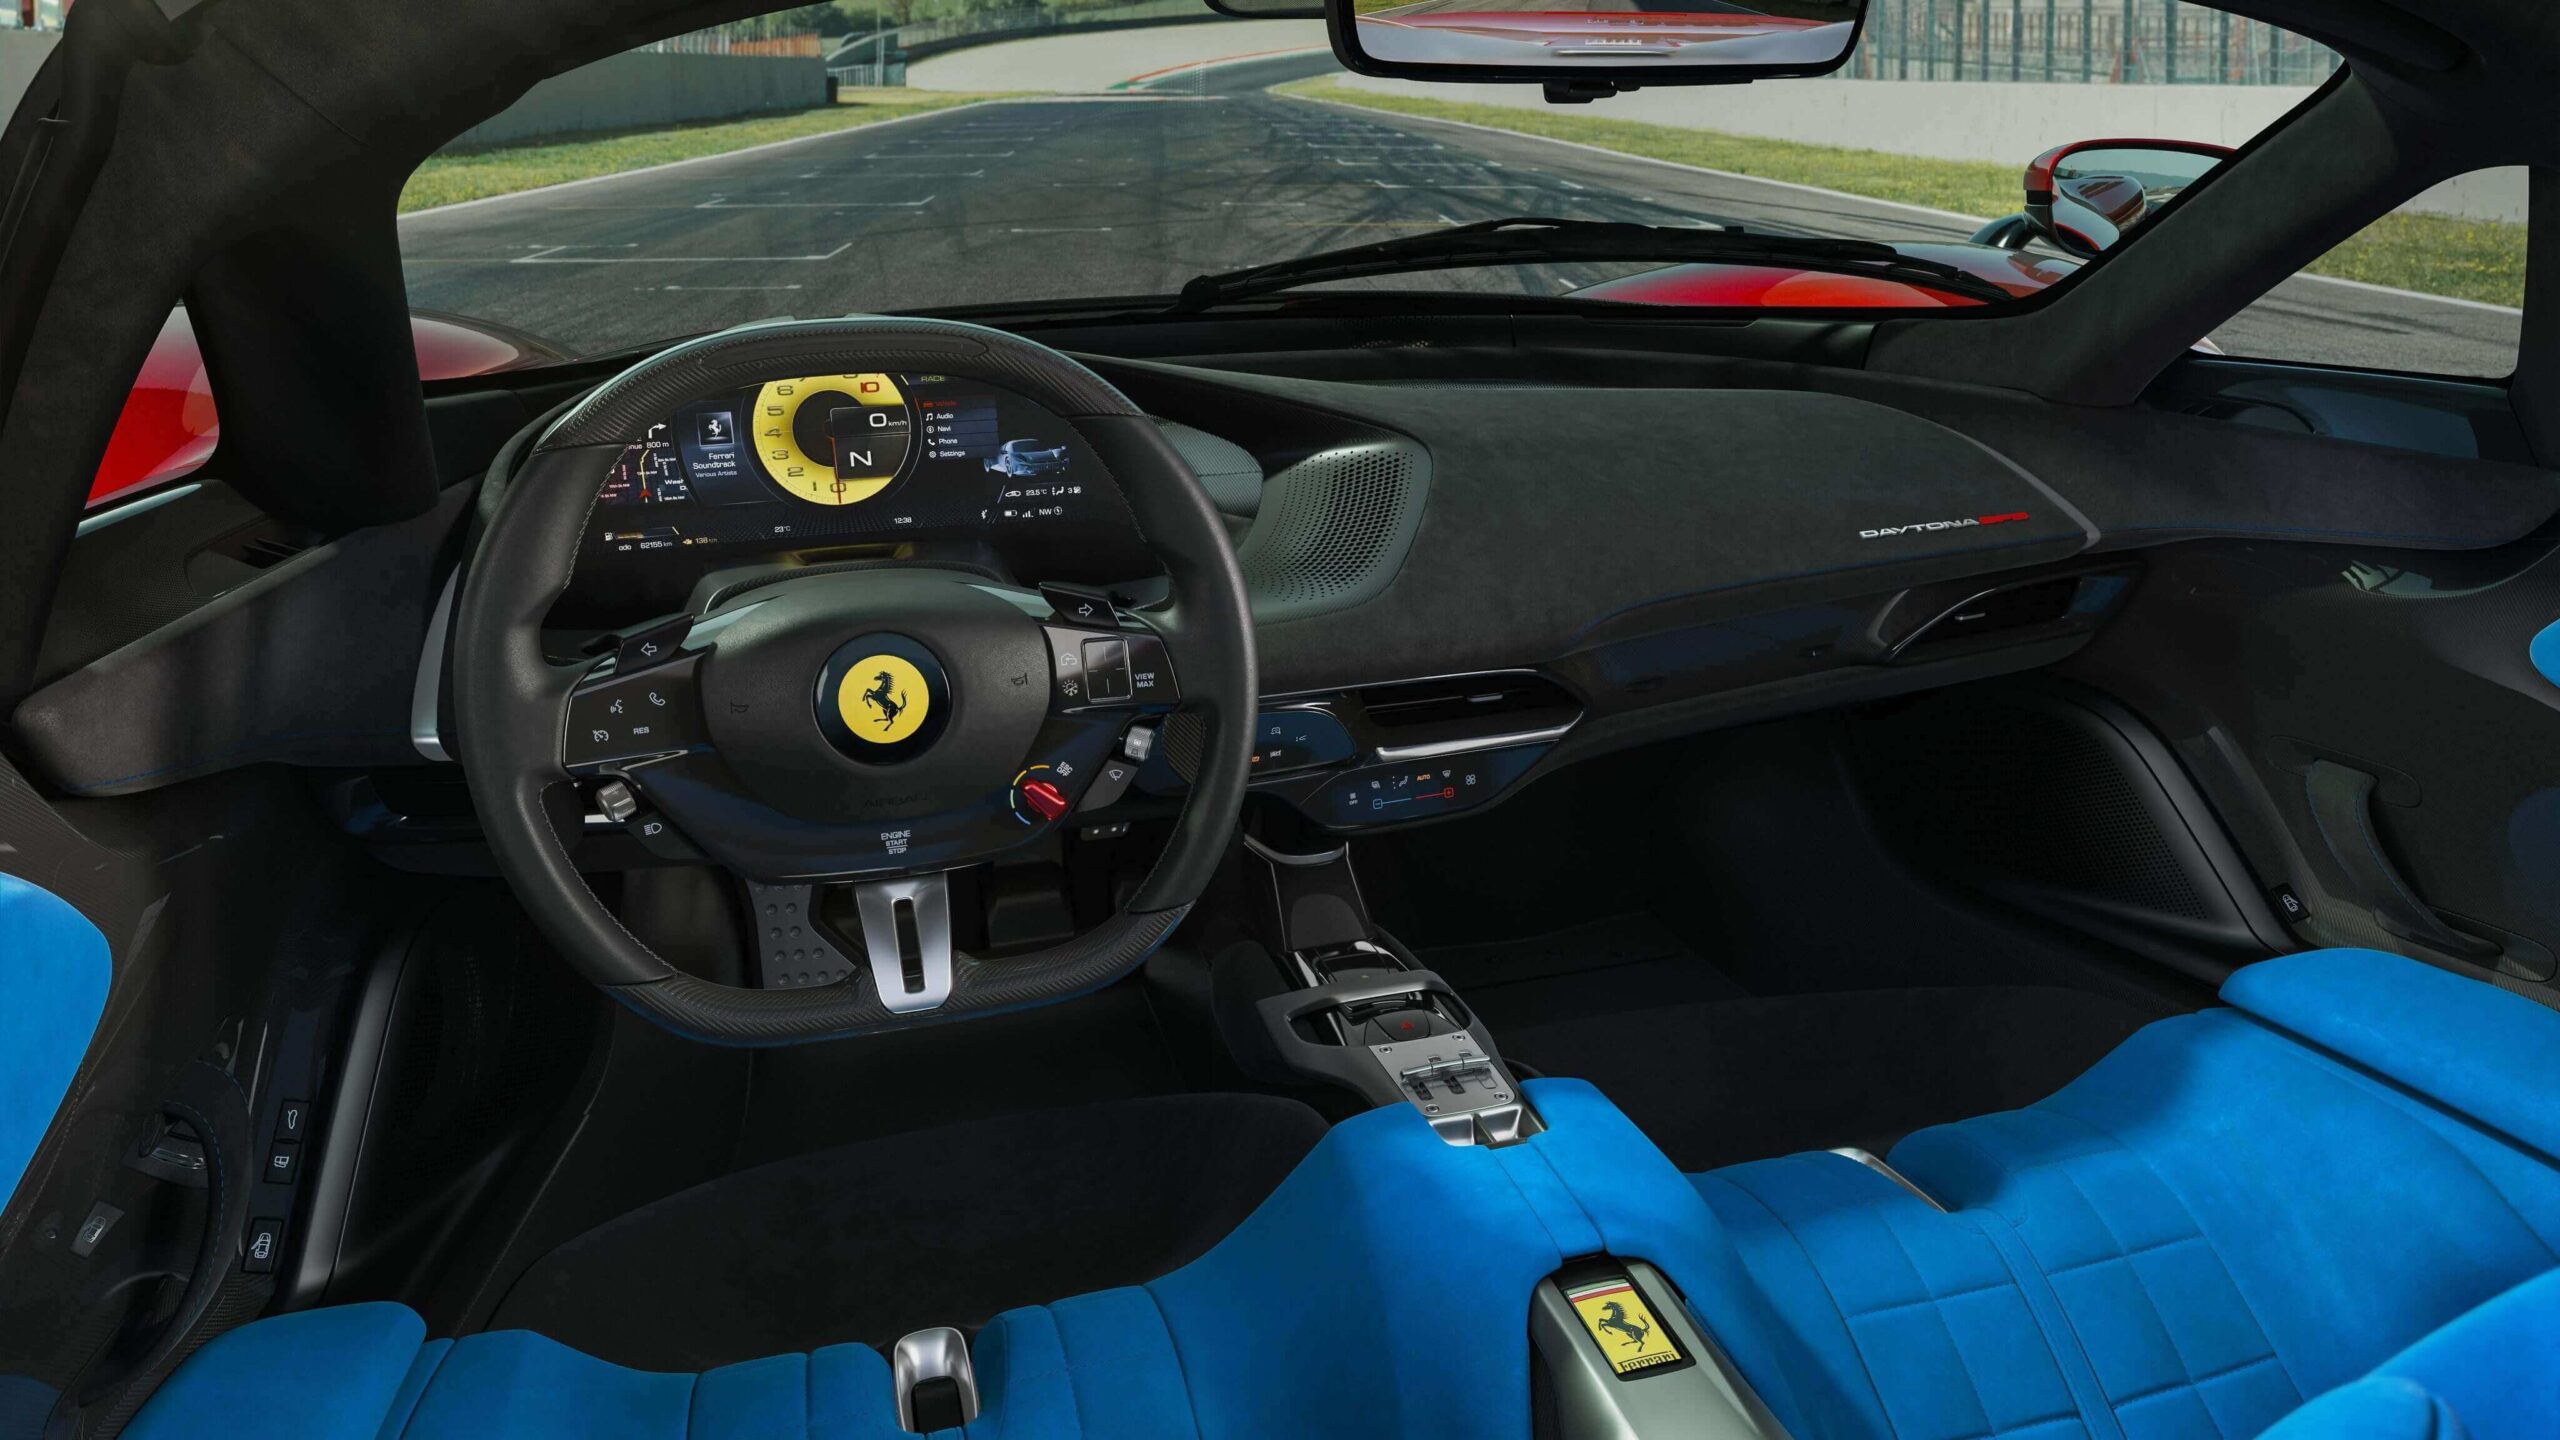 Ferrari Daytona SP3: inspired by legends